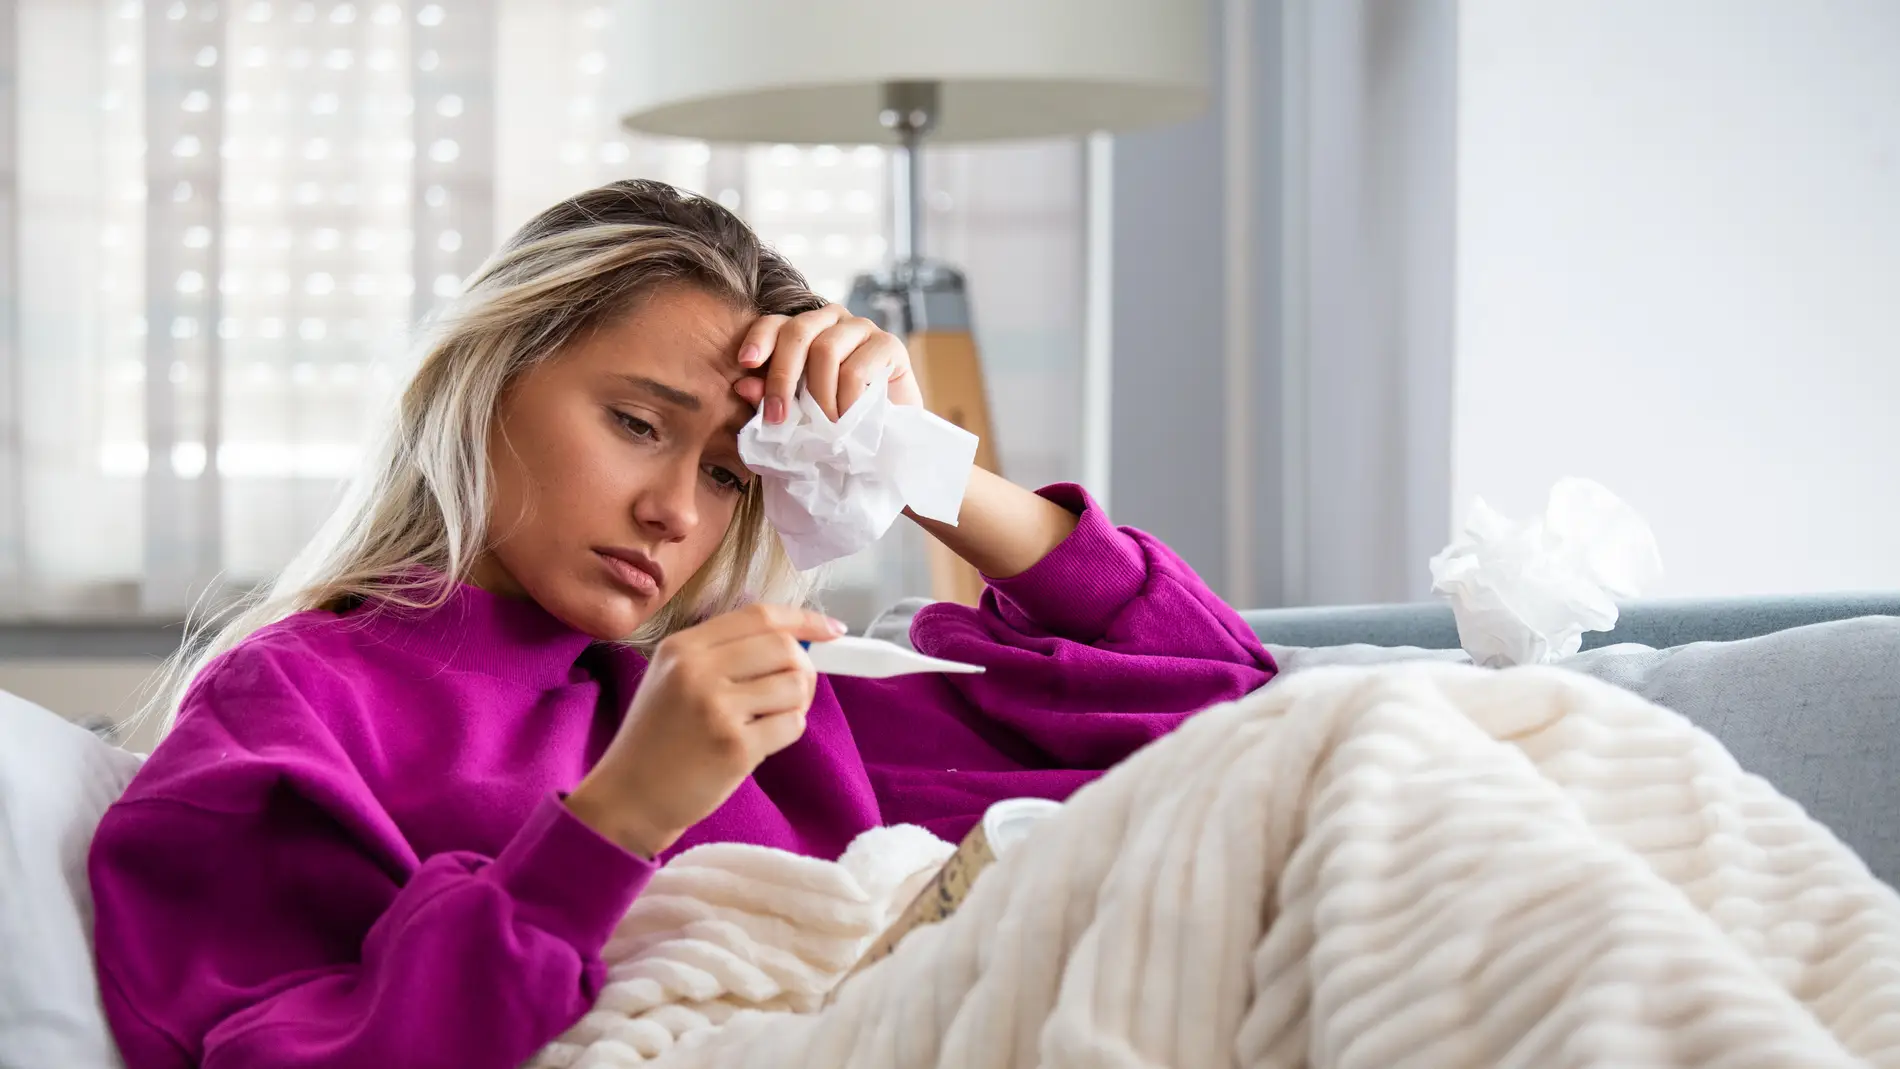 ¿Existen realmente los remedios caseros para la gripe? Expertos explican la realidad tras esta creencia 